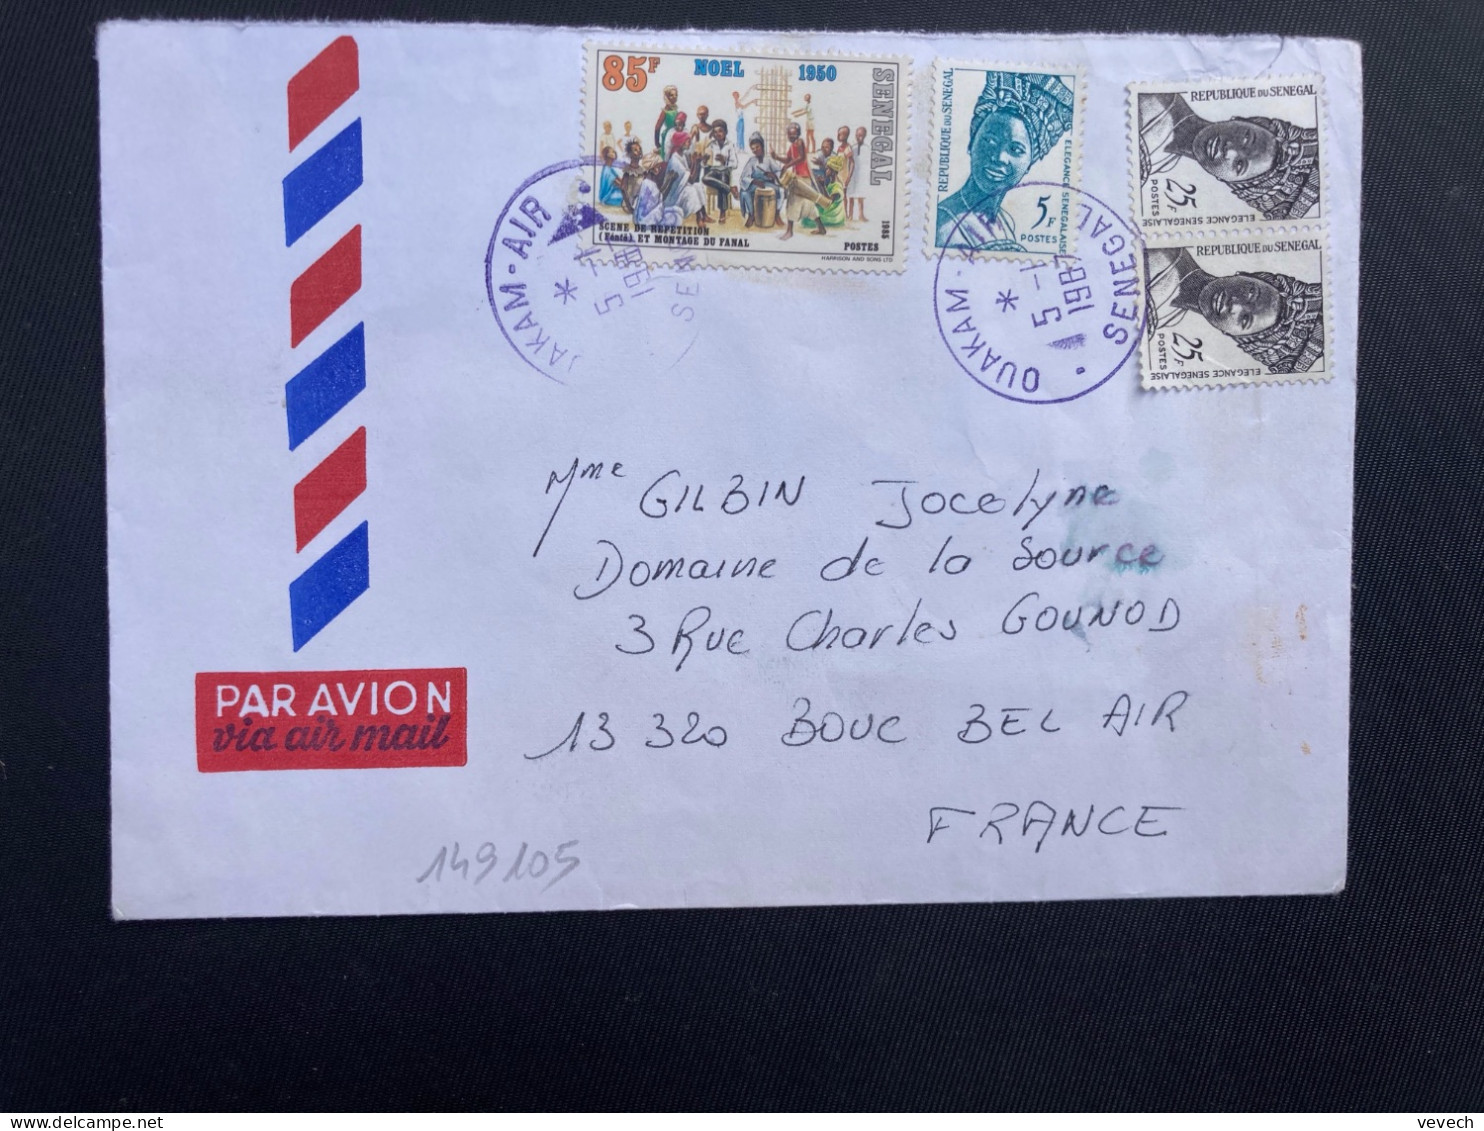 LETTRE Par Avion Pour La FRANCE TP NOEL 85F + ELEGANCE SENEGALAISE 25F Paire + 5F OBL. VIOLETTE 5-1 1987 OUAKAM AIR - Sénégal (1960-...)